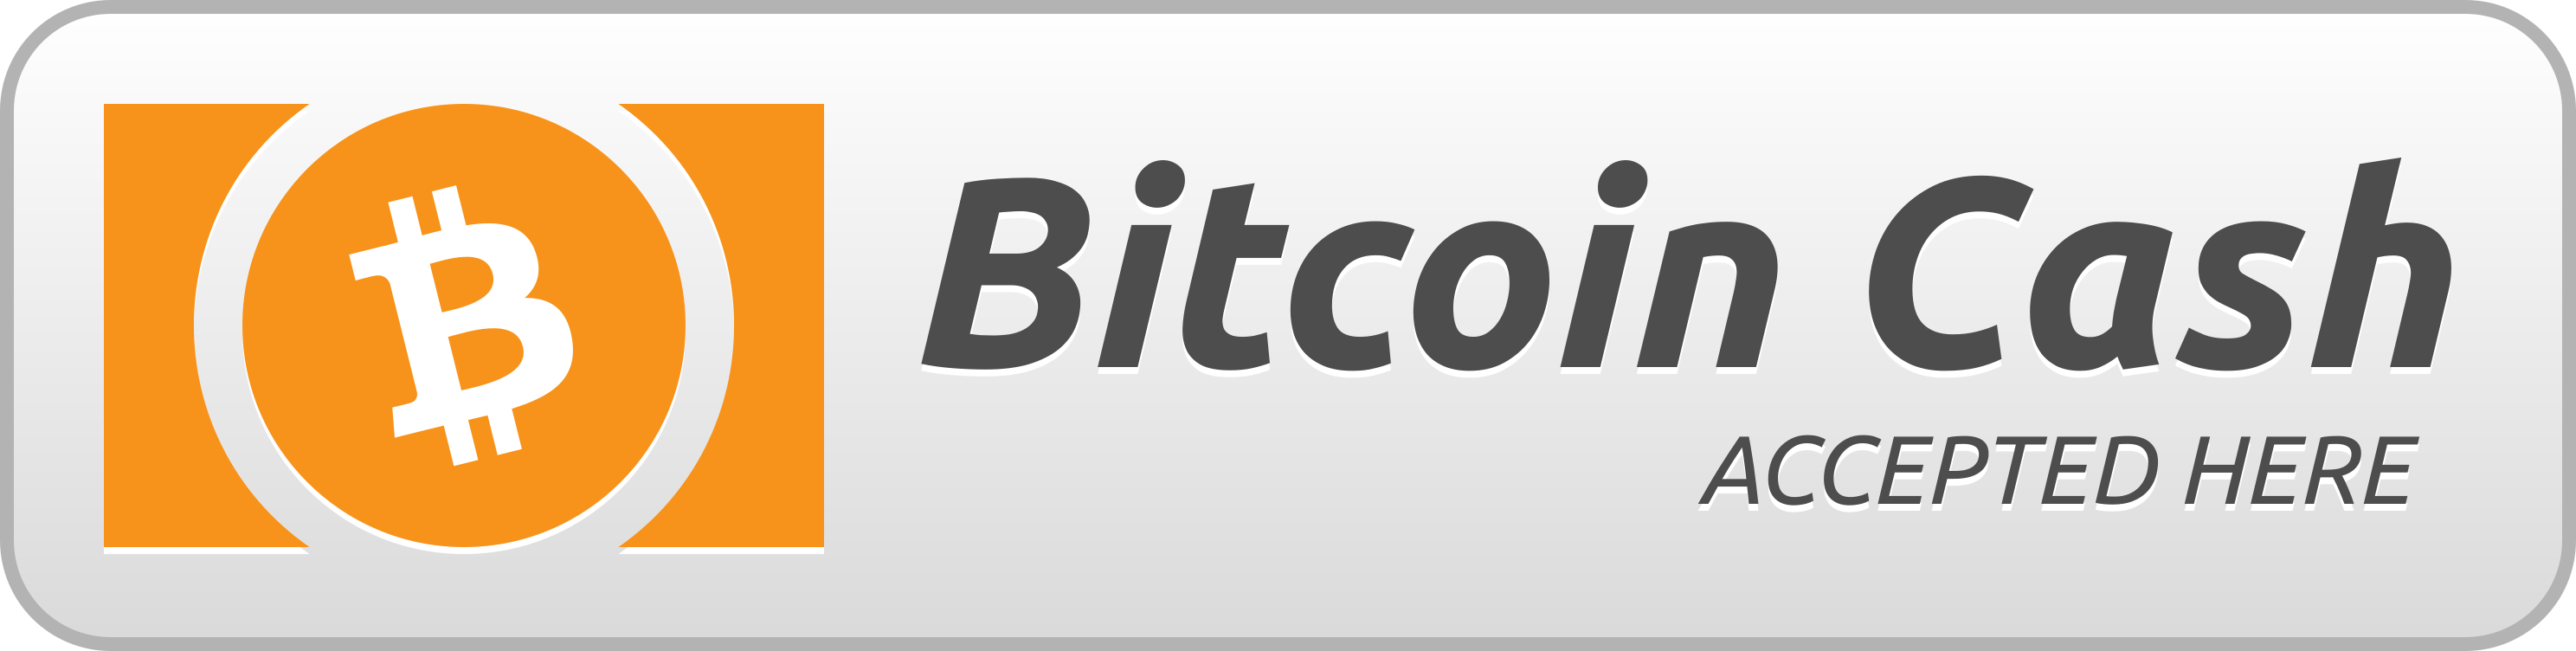 Cash Accepted Logo - accept-large-bitcoincash-round - Bitcoin, Bitcoin Cash & Litecoin Logos